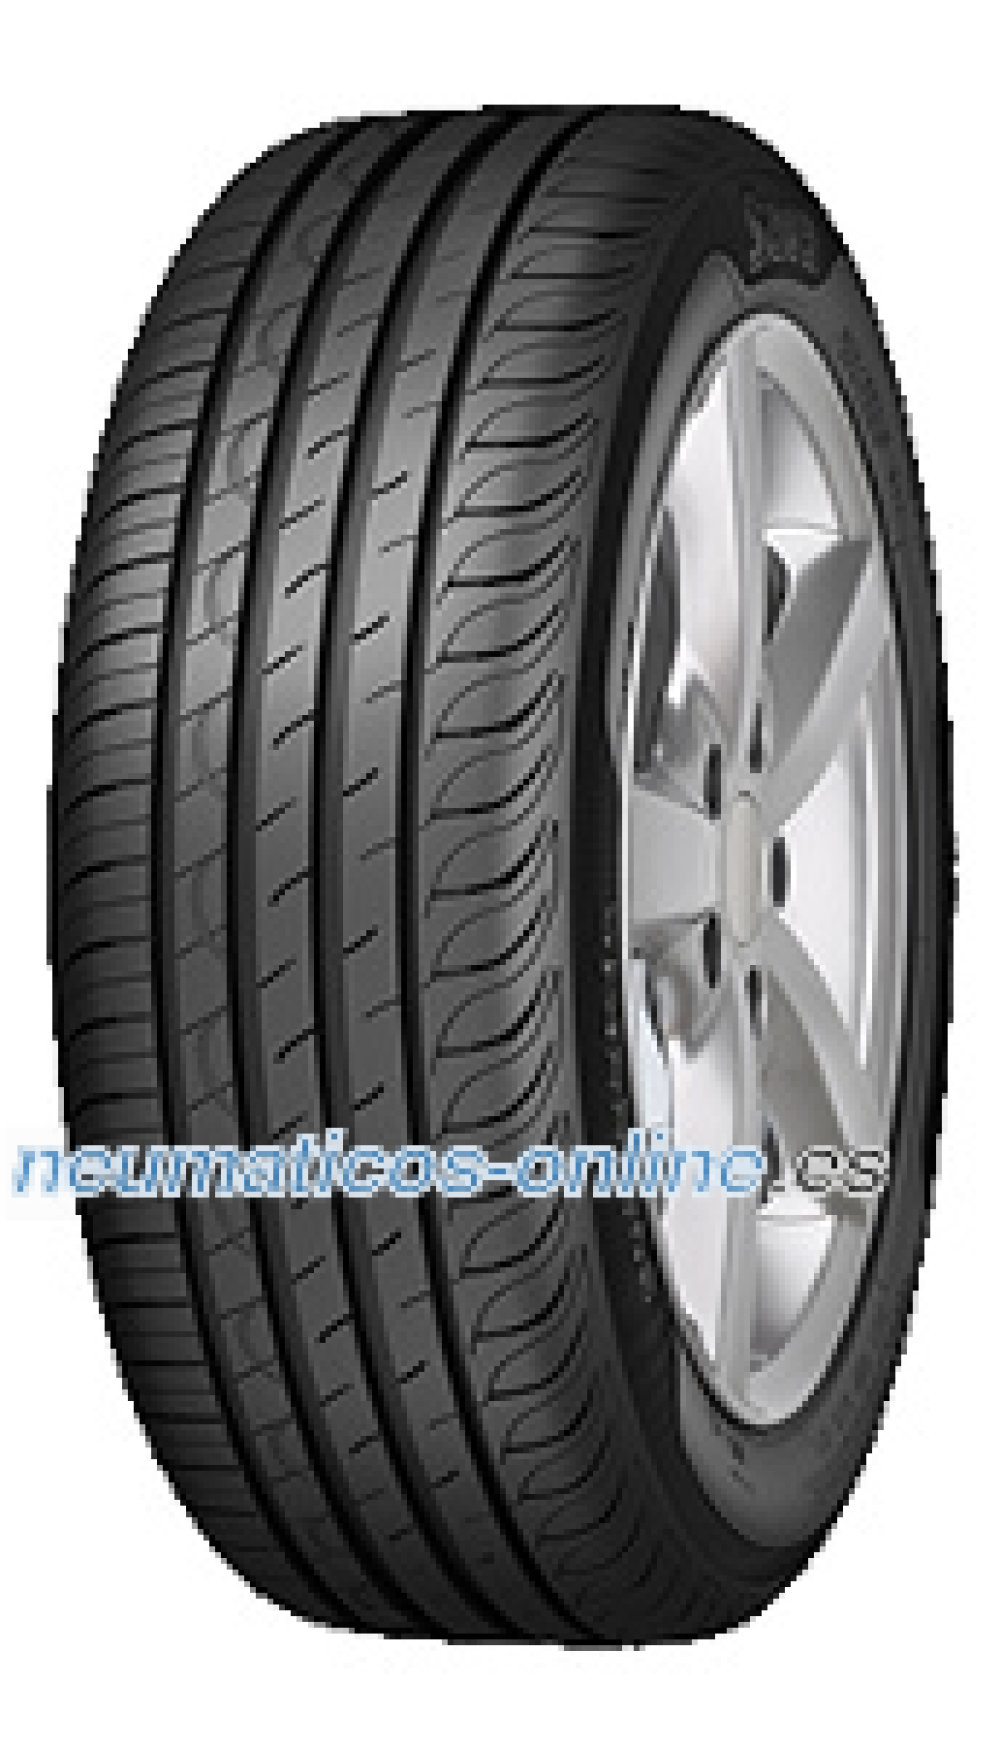 Comprar neumáticos 205 55 R16 baratos online